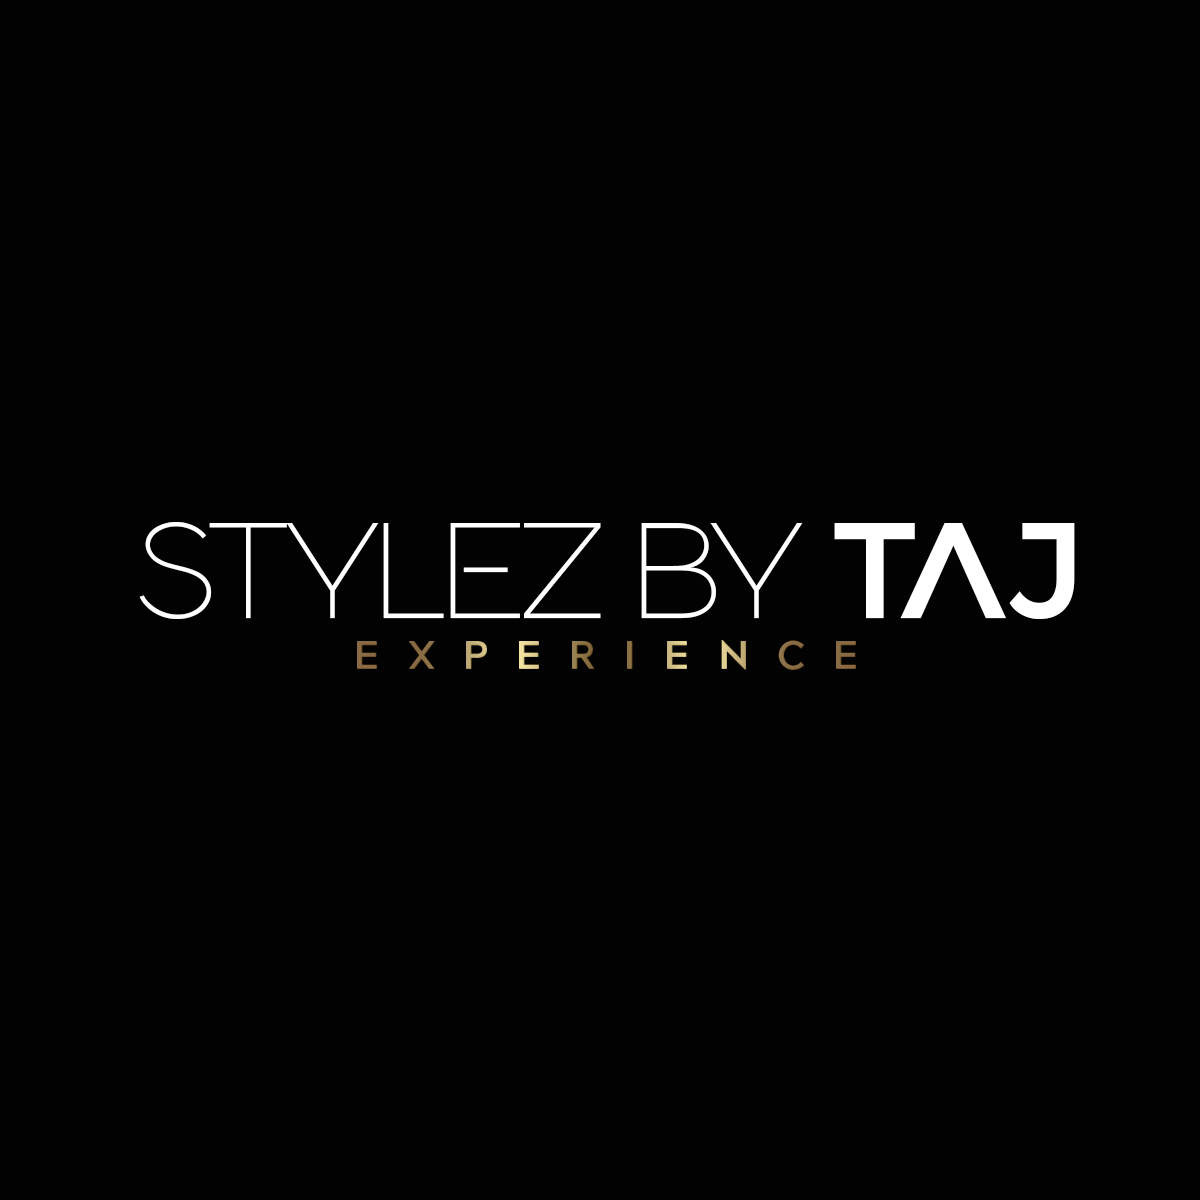 Stylez By Taj Experience